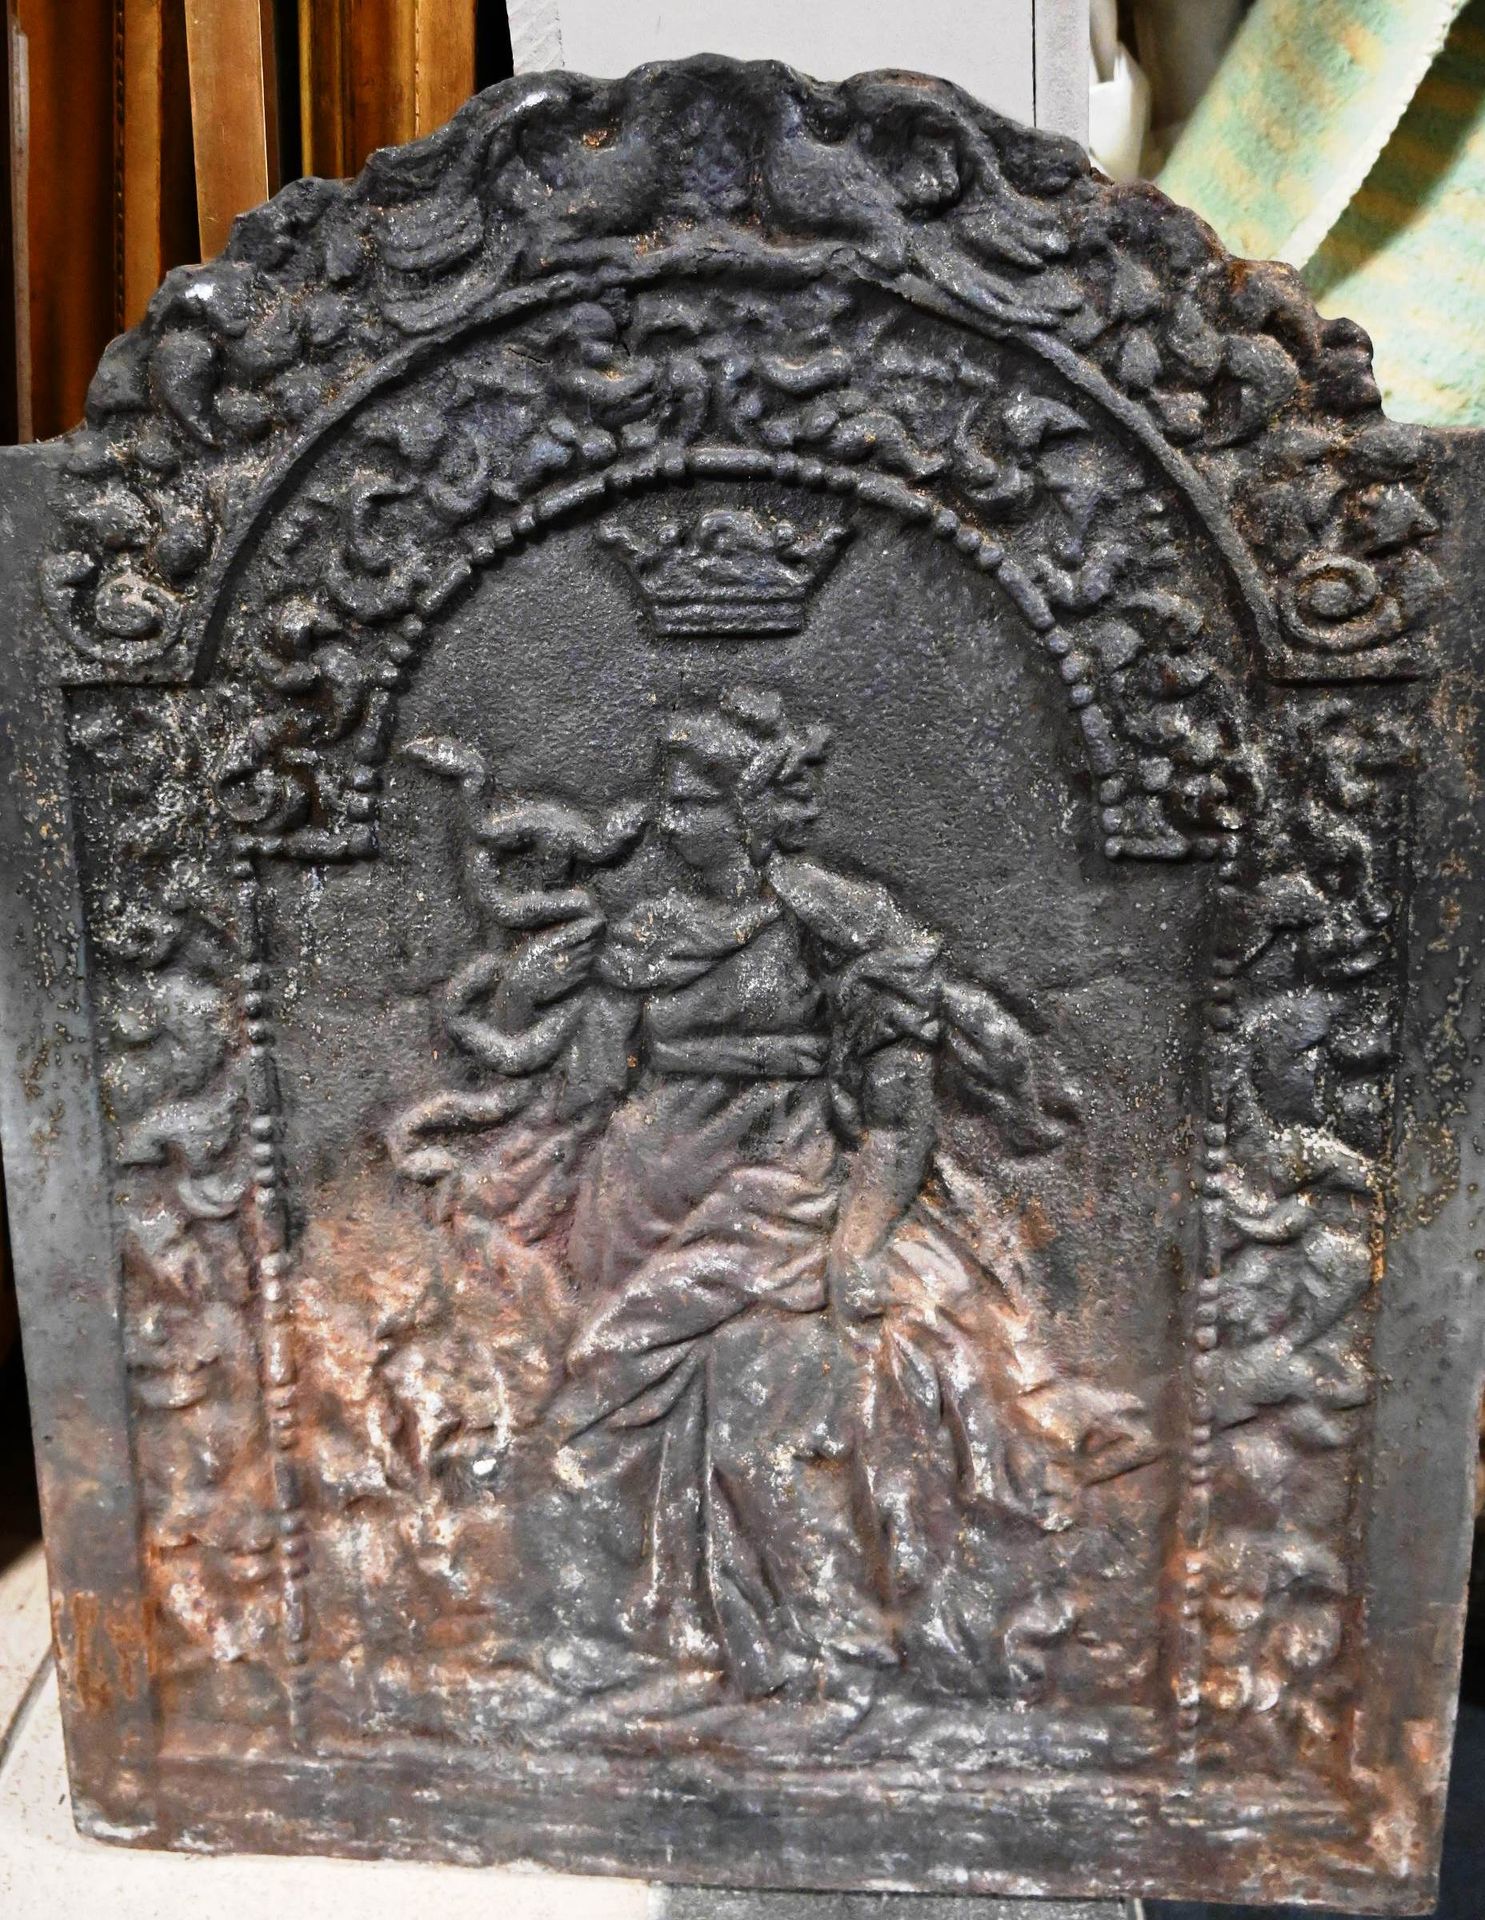 Taque de cheminée en fonte 铸铁火盆上装饰着一个带皇冠的女性形象。

尺寸：76厘米 x 61厘米